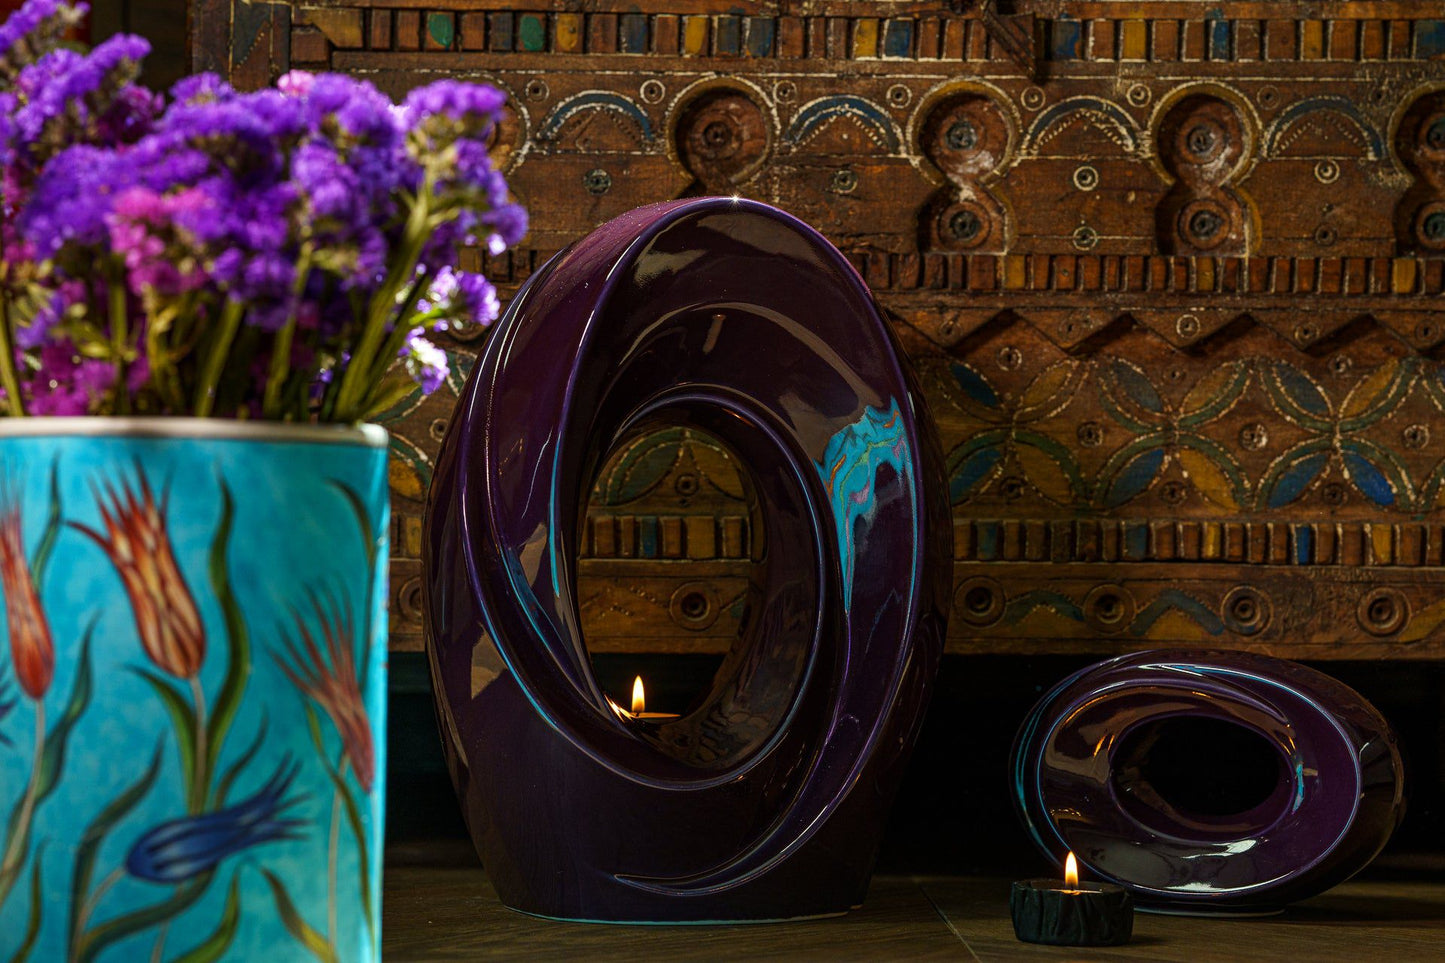 
                  
                    Pulvis Art Urns Adult Size Urn Handmade Cremation Urn for Ashes "The Passage" - Large | Violet | Ceramic
                  
                